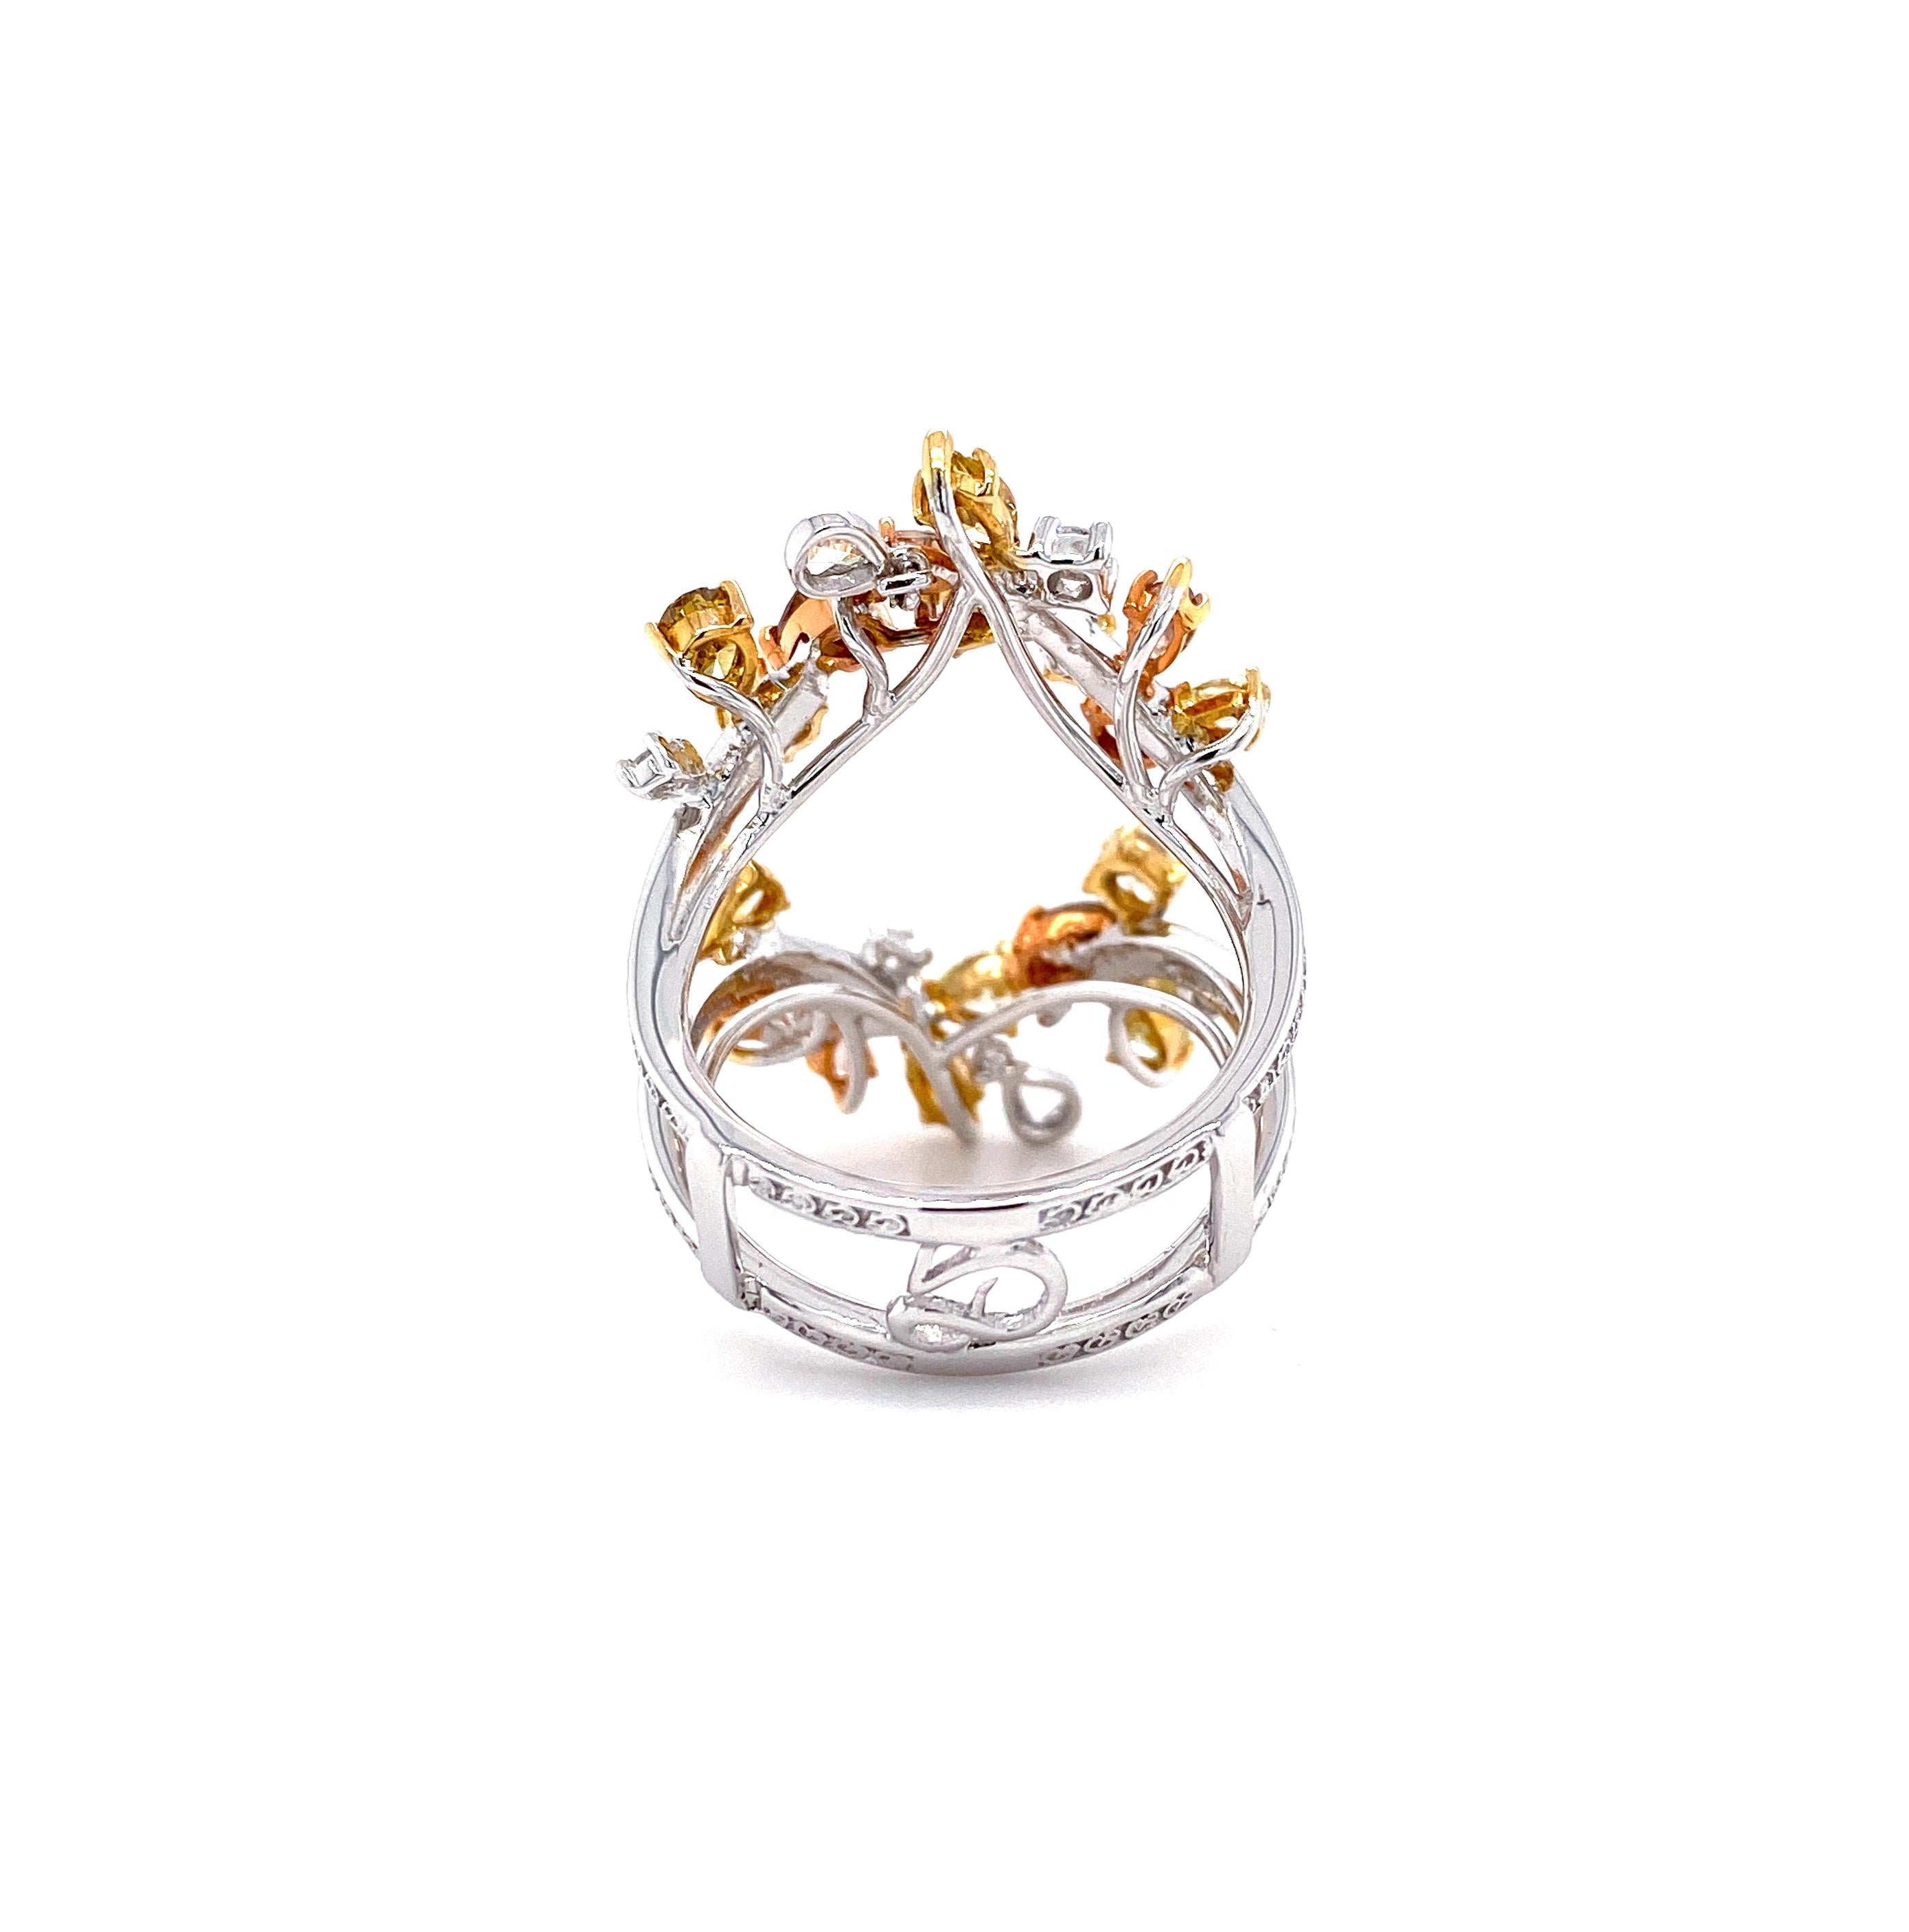 IGI Certified 3.57 Carat Brown Diamond Multi-Occasion Ring in 18 Karat Gold 7